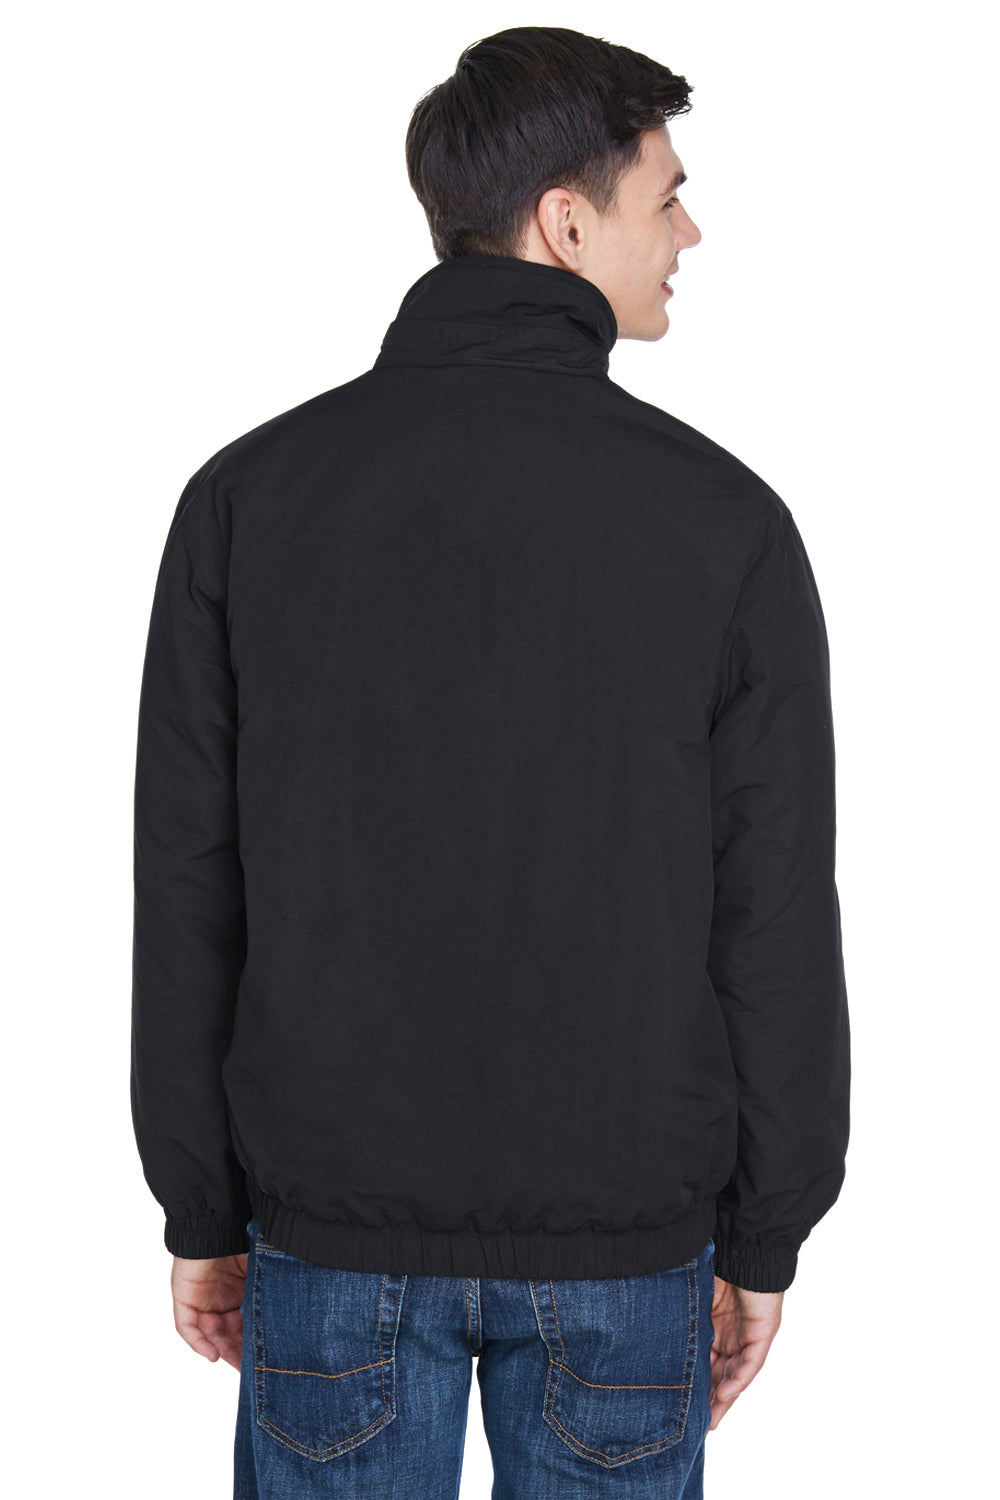 UltraClub 8921 Mens Adventure Wind & Water Resistant Full Zip Jacket Black Back